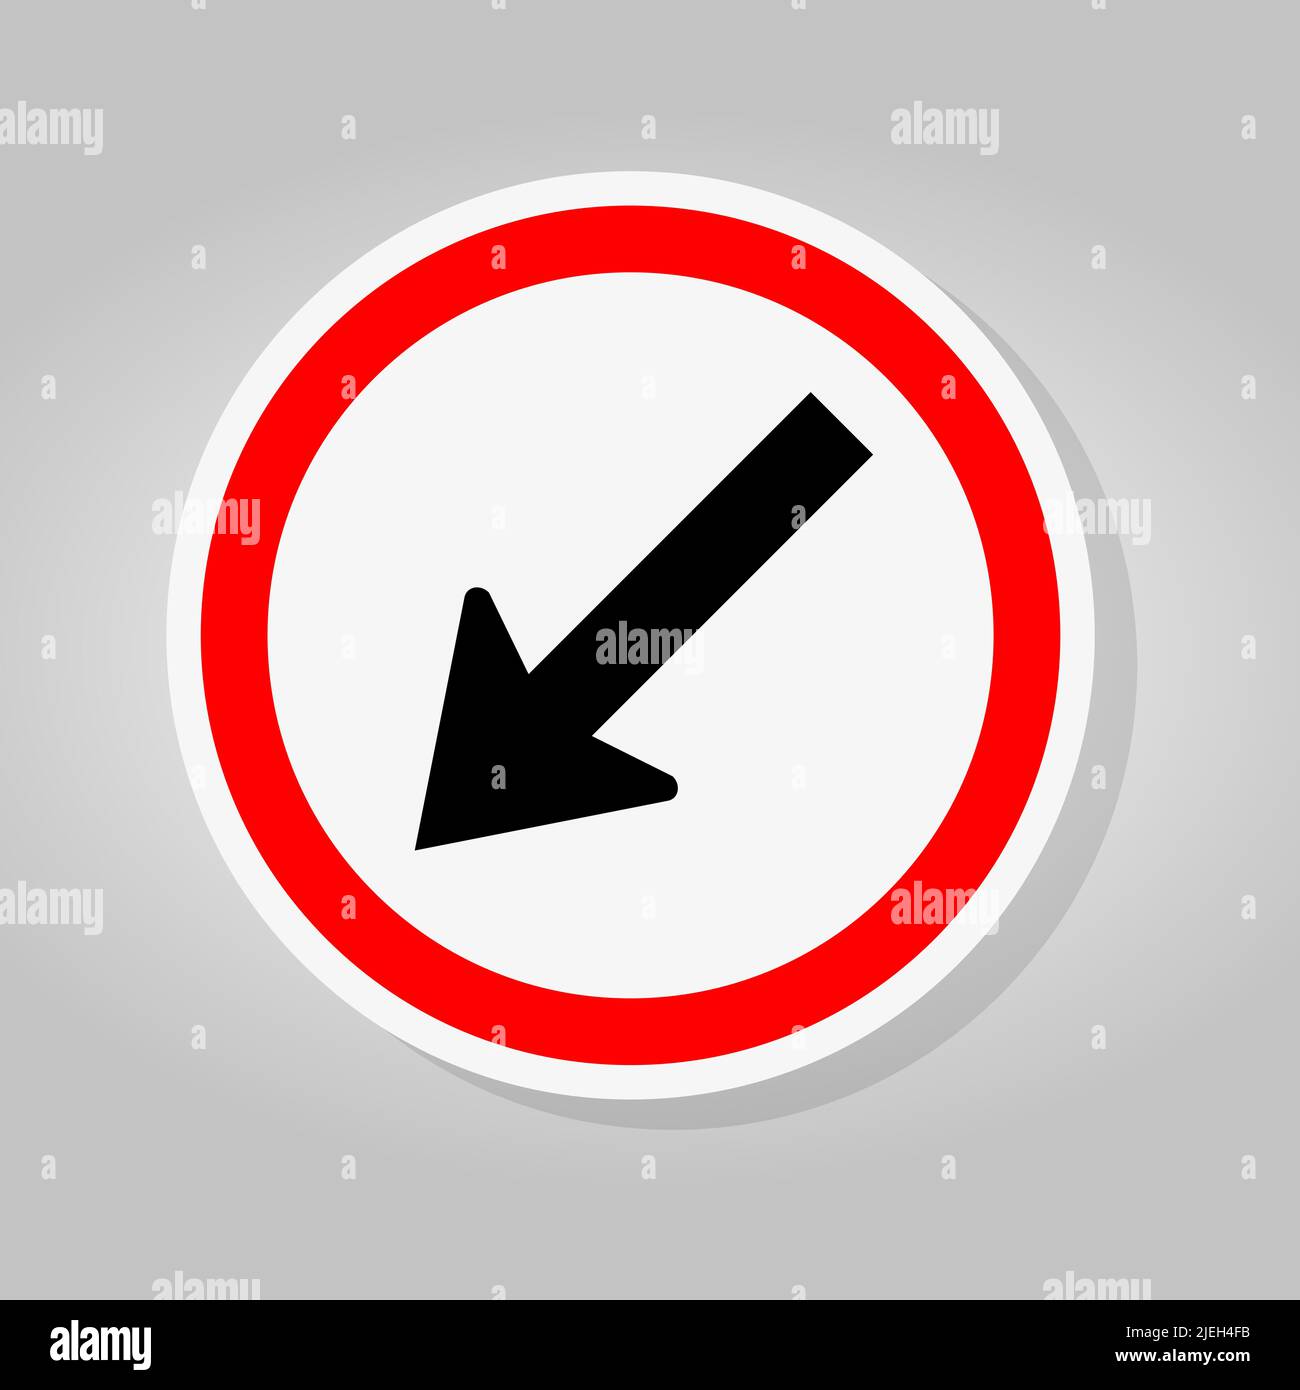 Rester à gauche par la flèche cercle rouge signalisation routière isoler sur fond blanc, illustration vectorielle Illustration de Vecteur